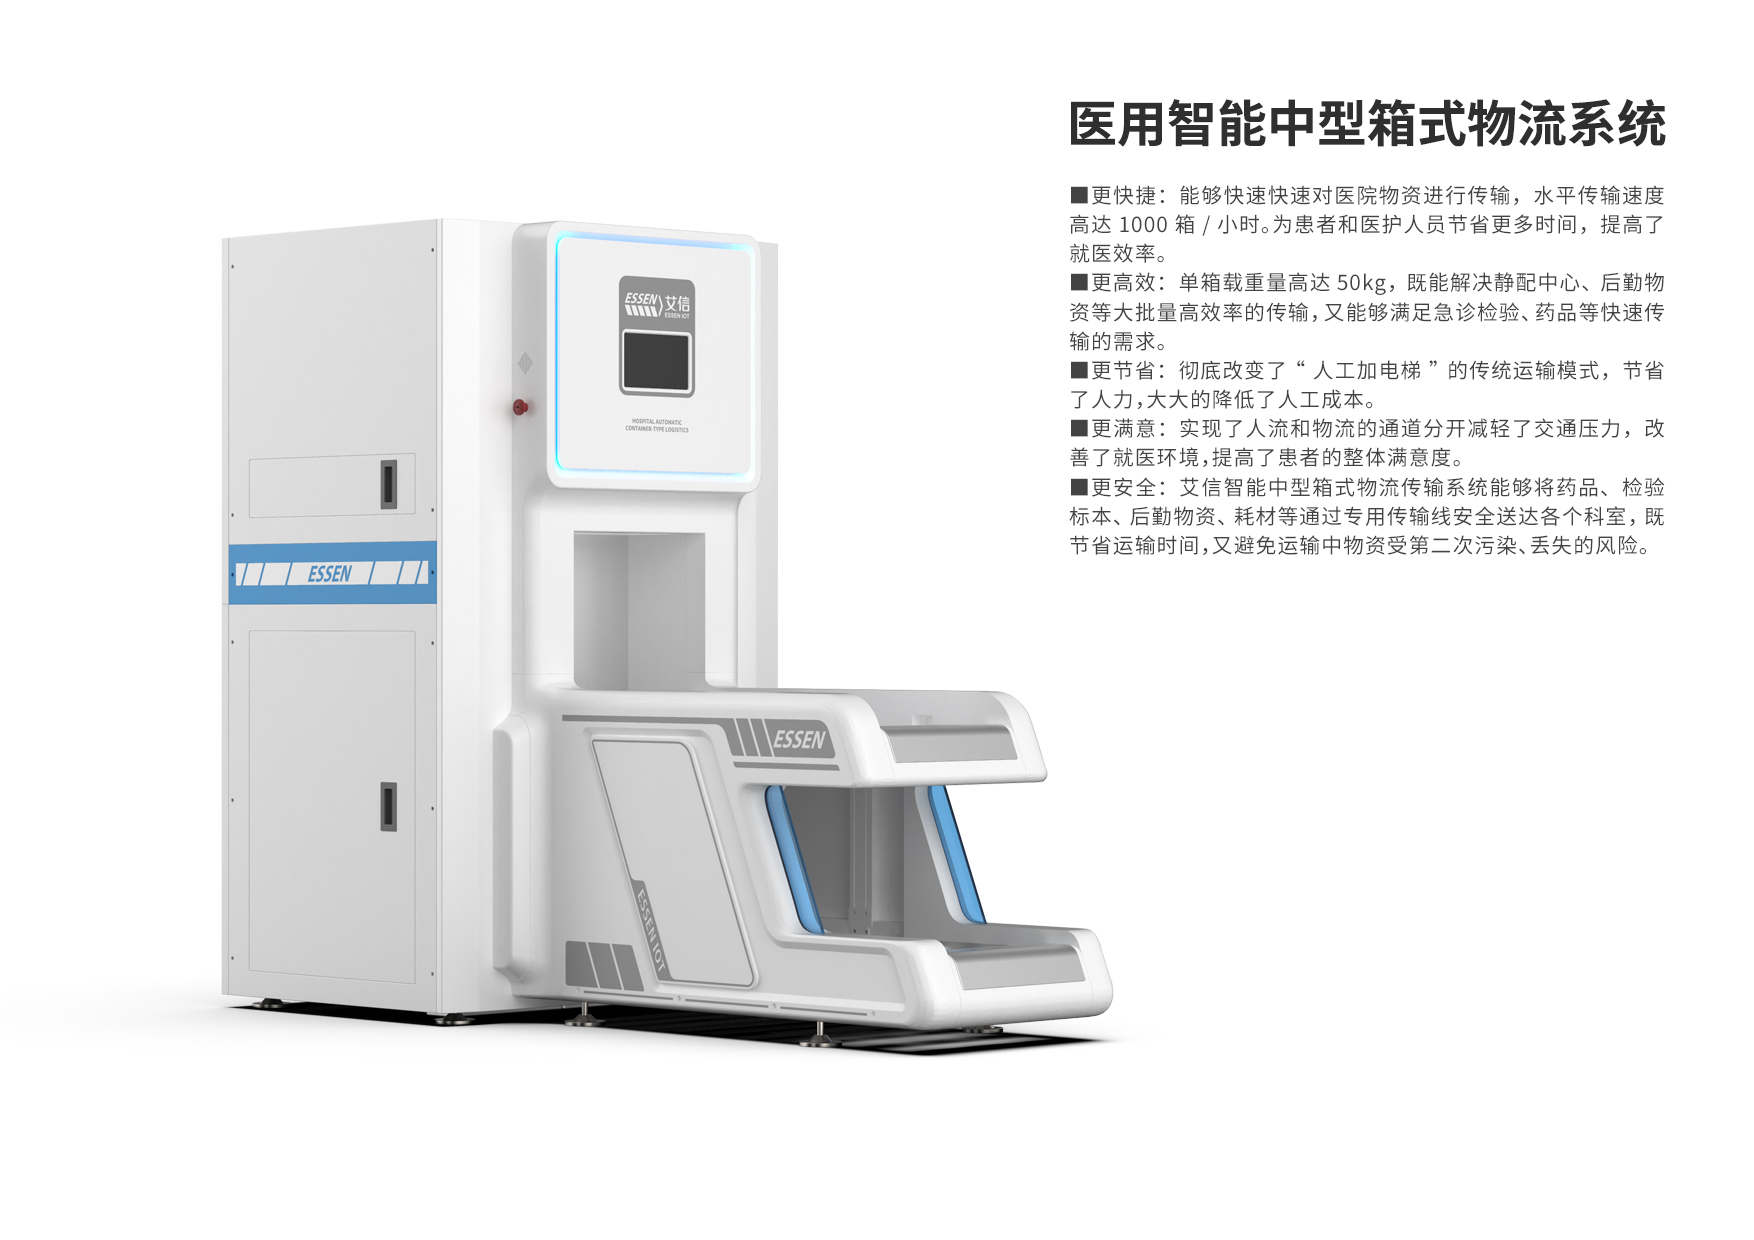 《医用智能中型箱式物流系统设计》02【上海木马】.jpg